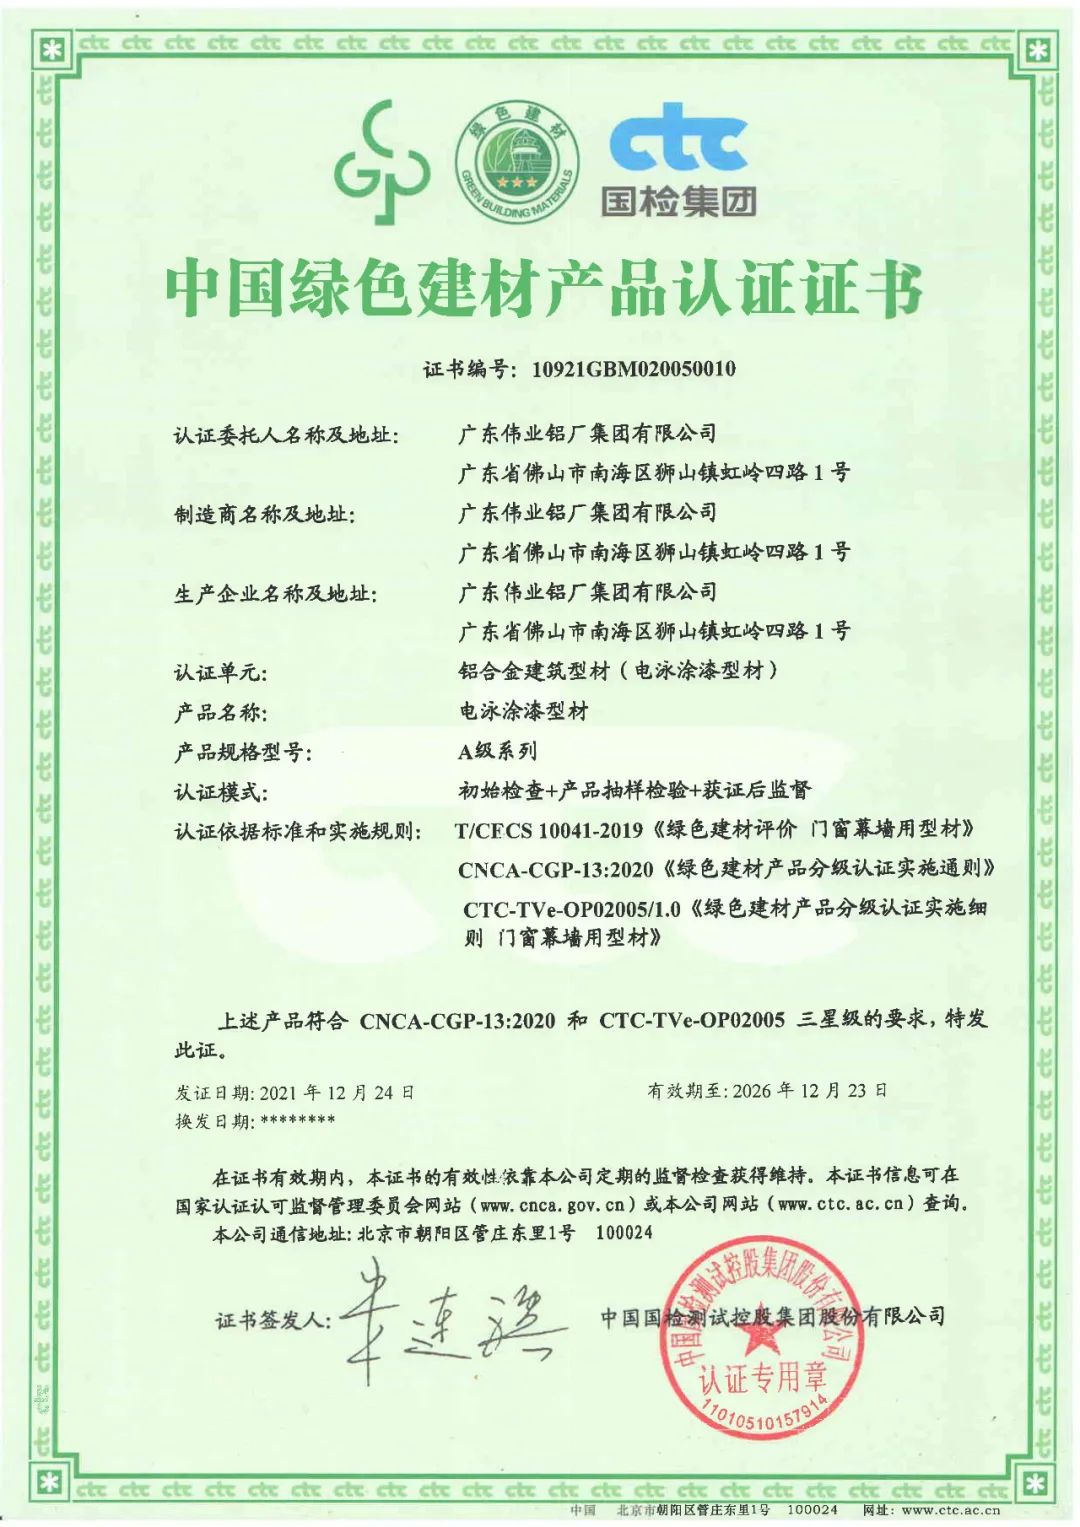 广东伟业获国家级绿色建材产品三星认证